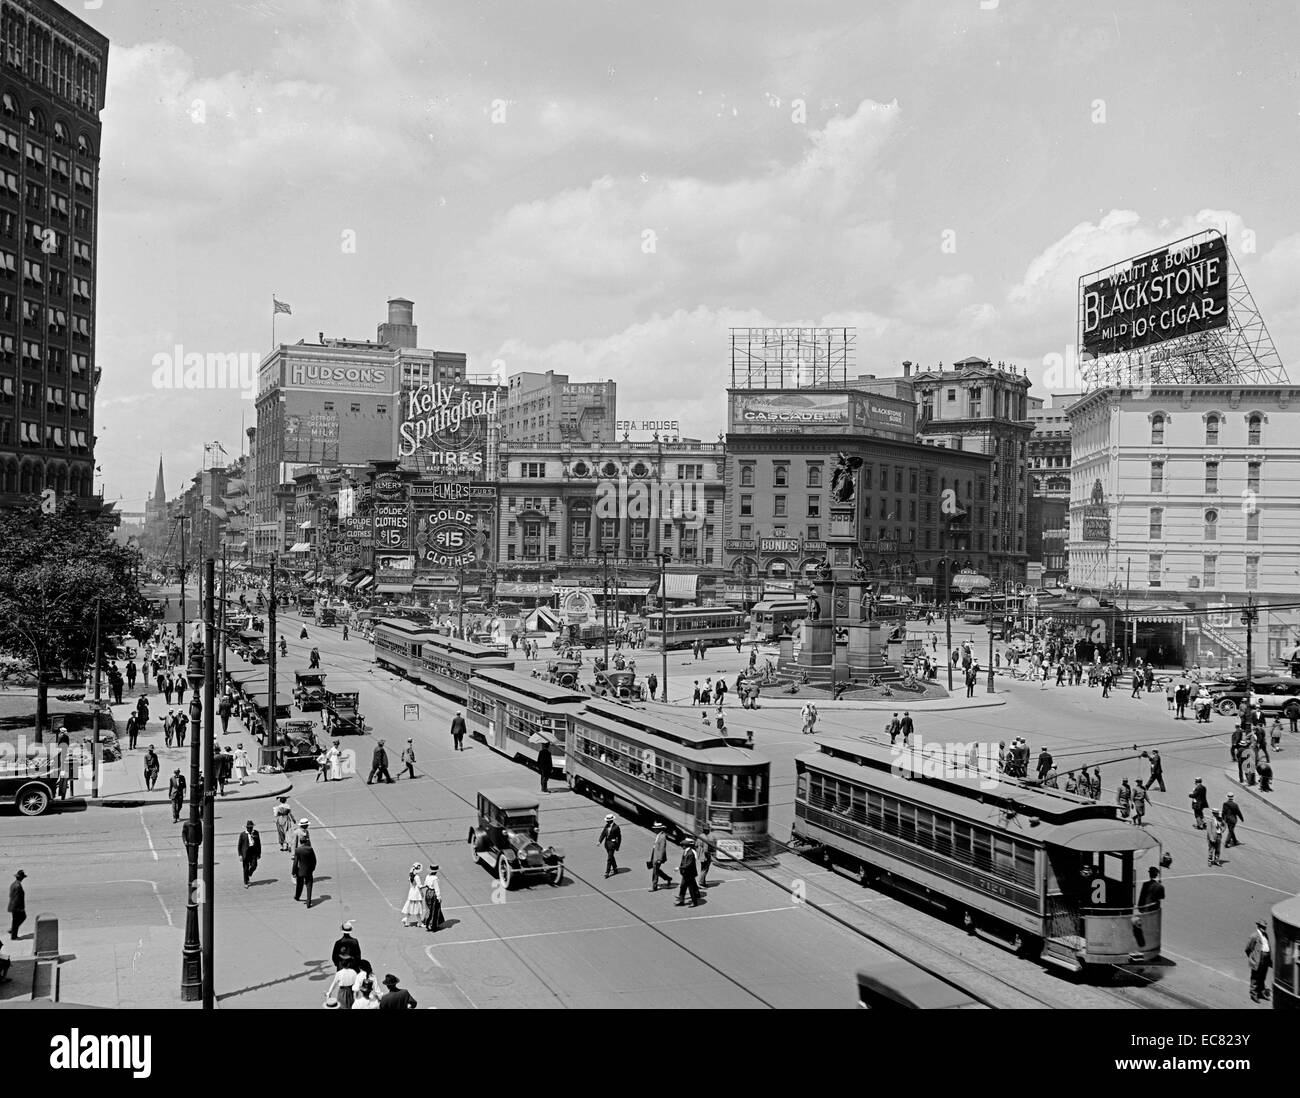 Malerische Schuss der Innenstadt von Detroit. Das Bild zeigt die geschäftigen Highstreet voller Menschen, Autos und Straßenbahnen. Datiert um 1917. Stockfoto